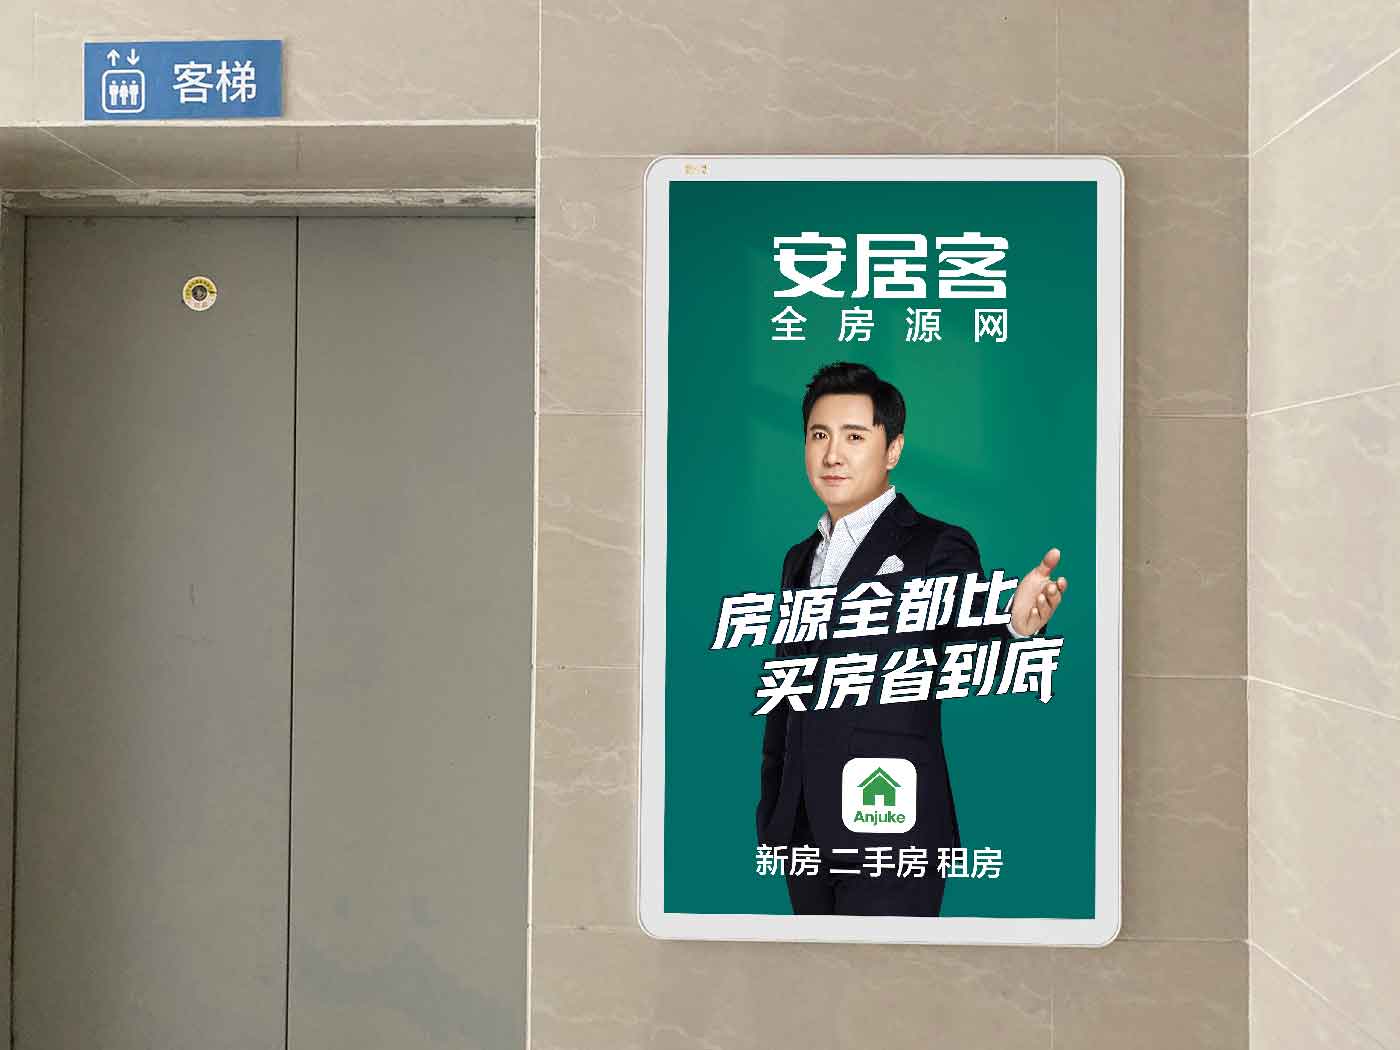 上海户外广告投放 社区广告传媒公司